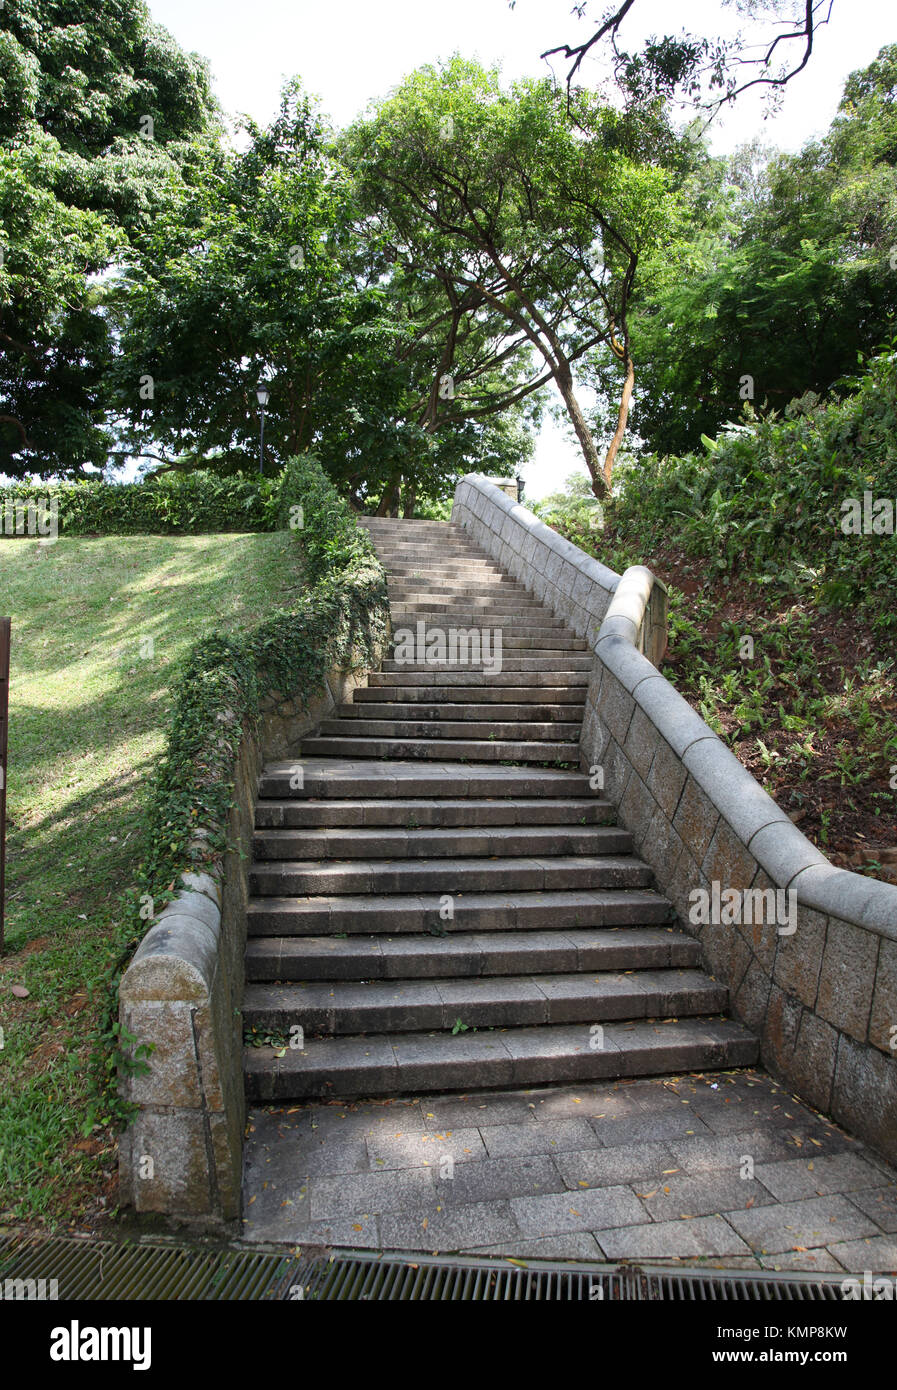 Escaleras de piedra subiendo en un parque o jardín Singapur Foto de stock